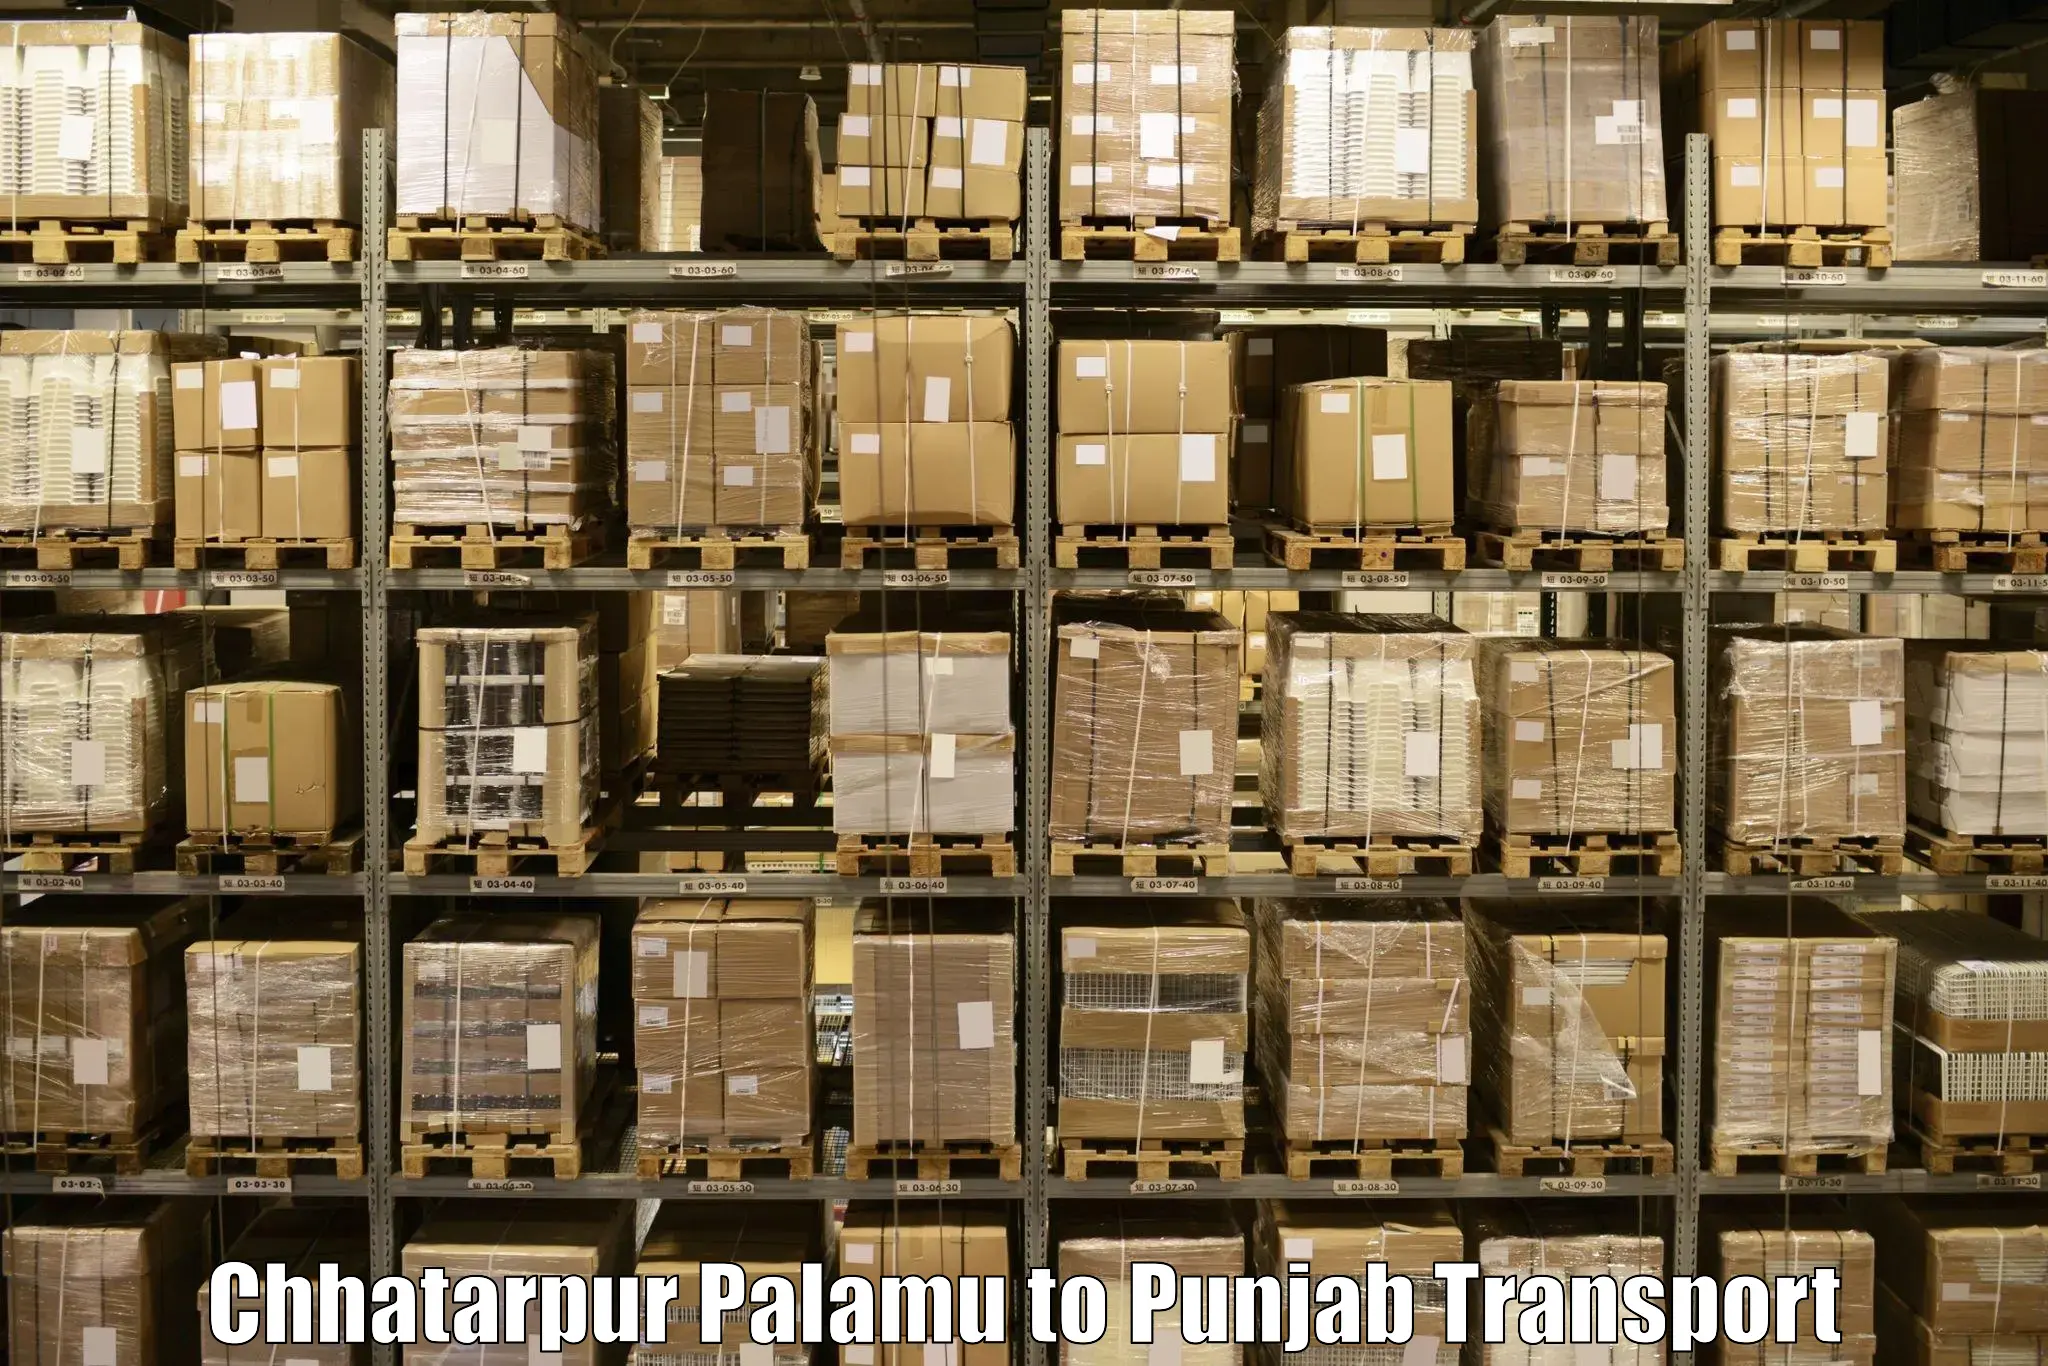 Daily parcel service transport Chhatarpur Palamu to Nawanshahr